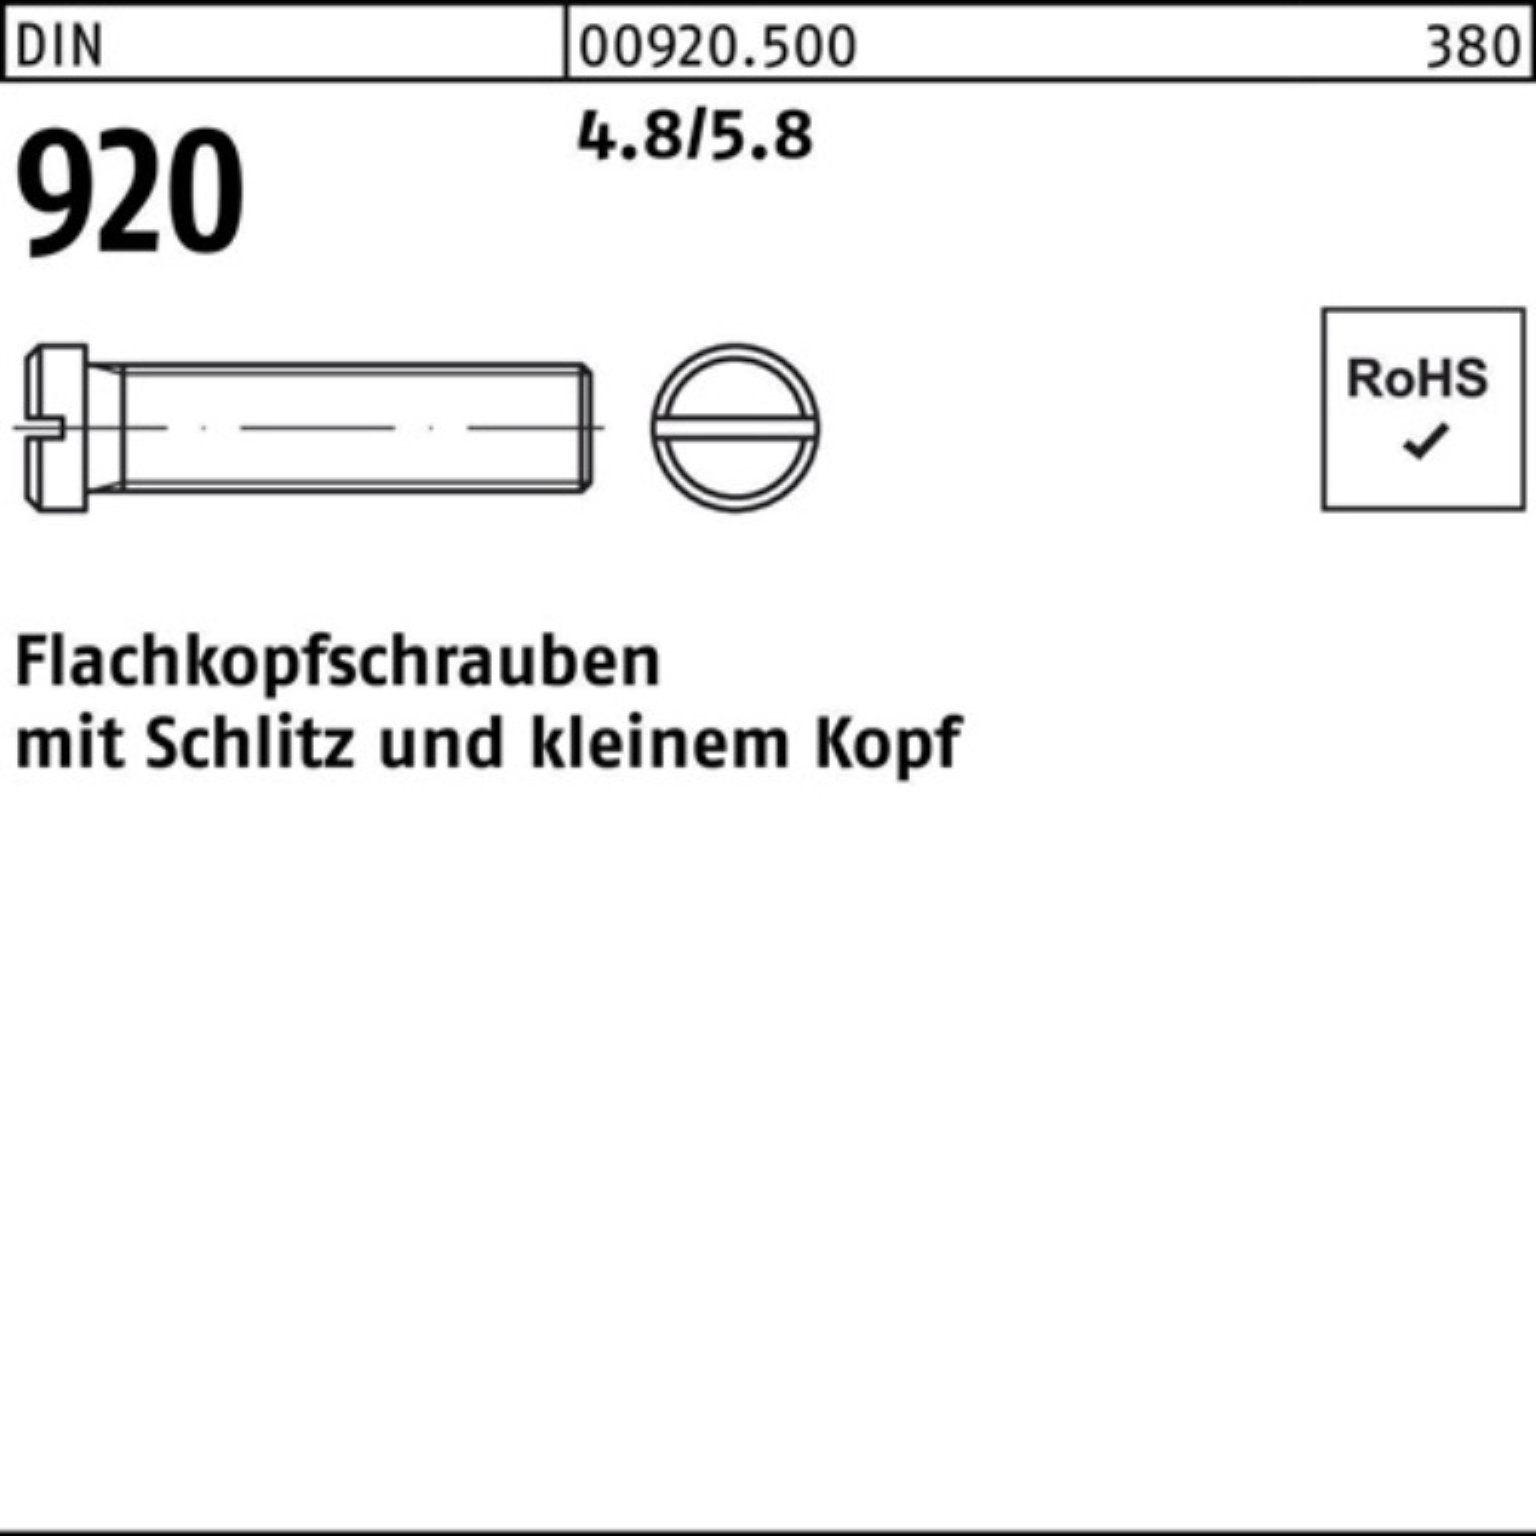 Reyher Schraube 100er Pack Flachkopfschraube 100 Schlitz 920 Stück 4.8/5.8 8 DIN M3x